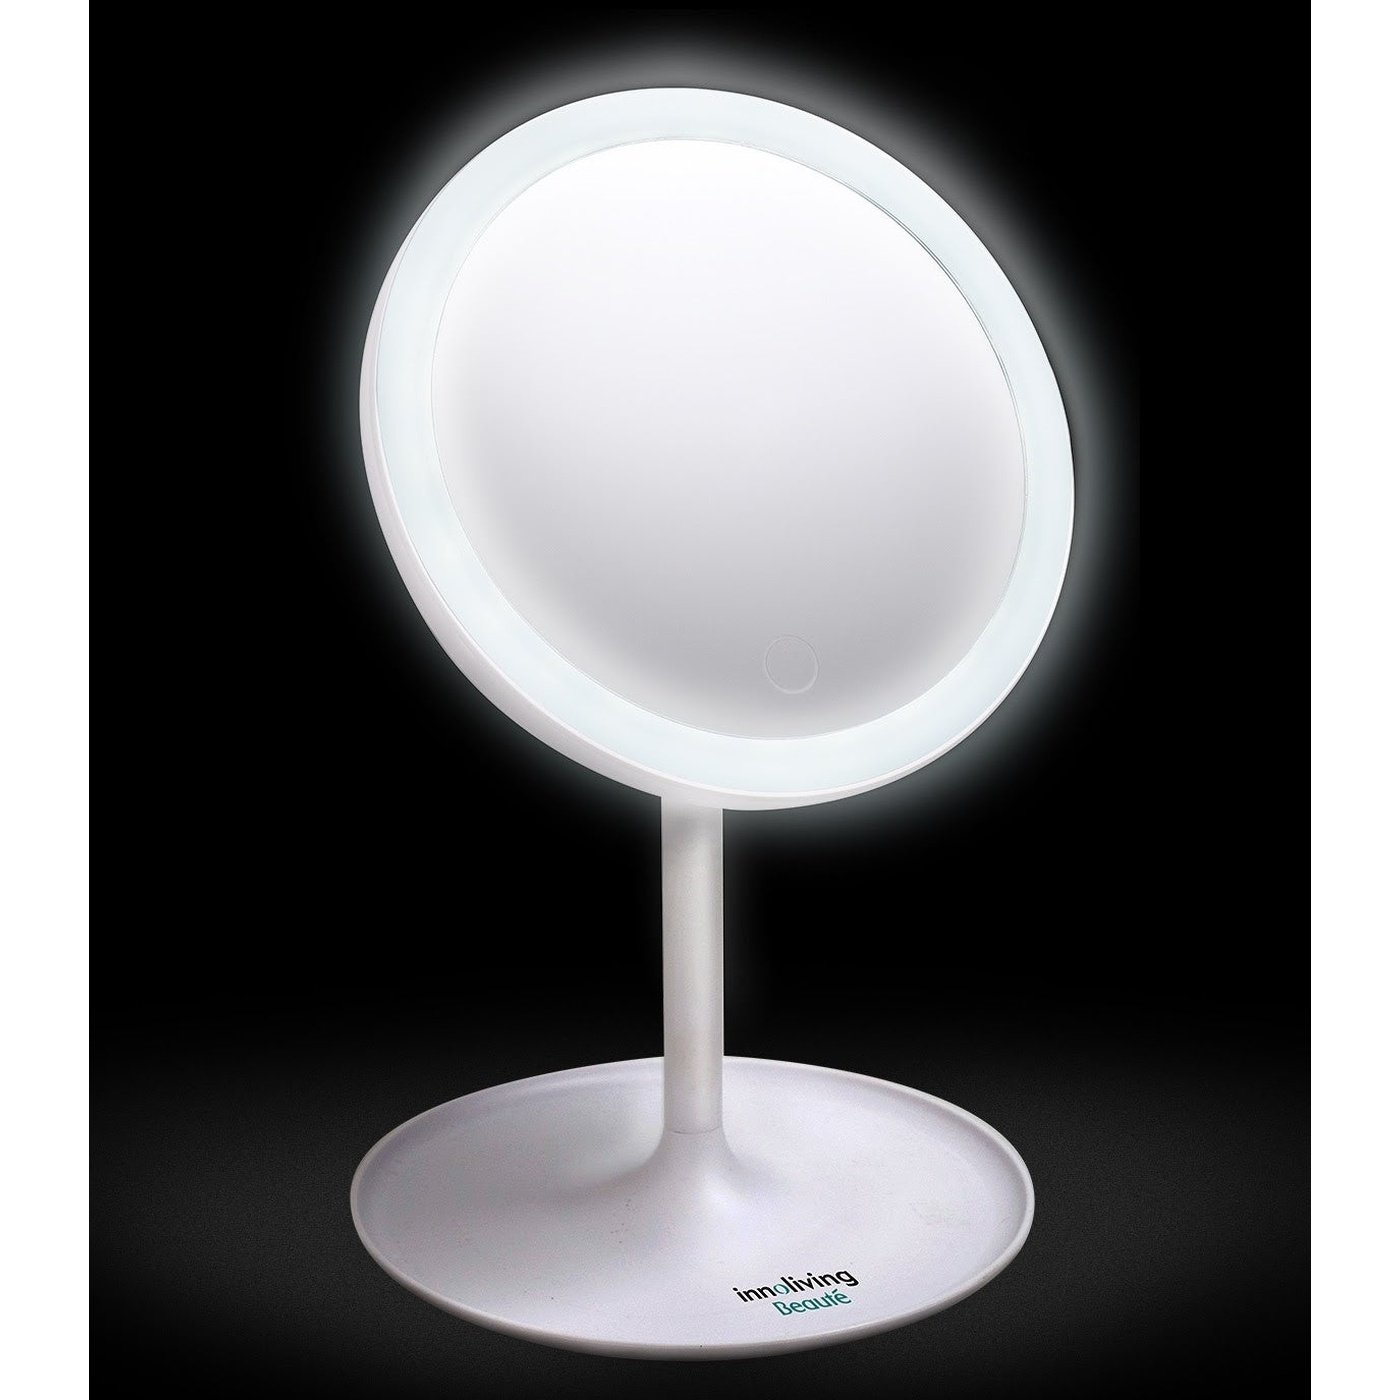 180 ° rotatable LED light mirror real vision adjustable brightness, Innoliving INN-803